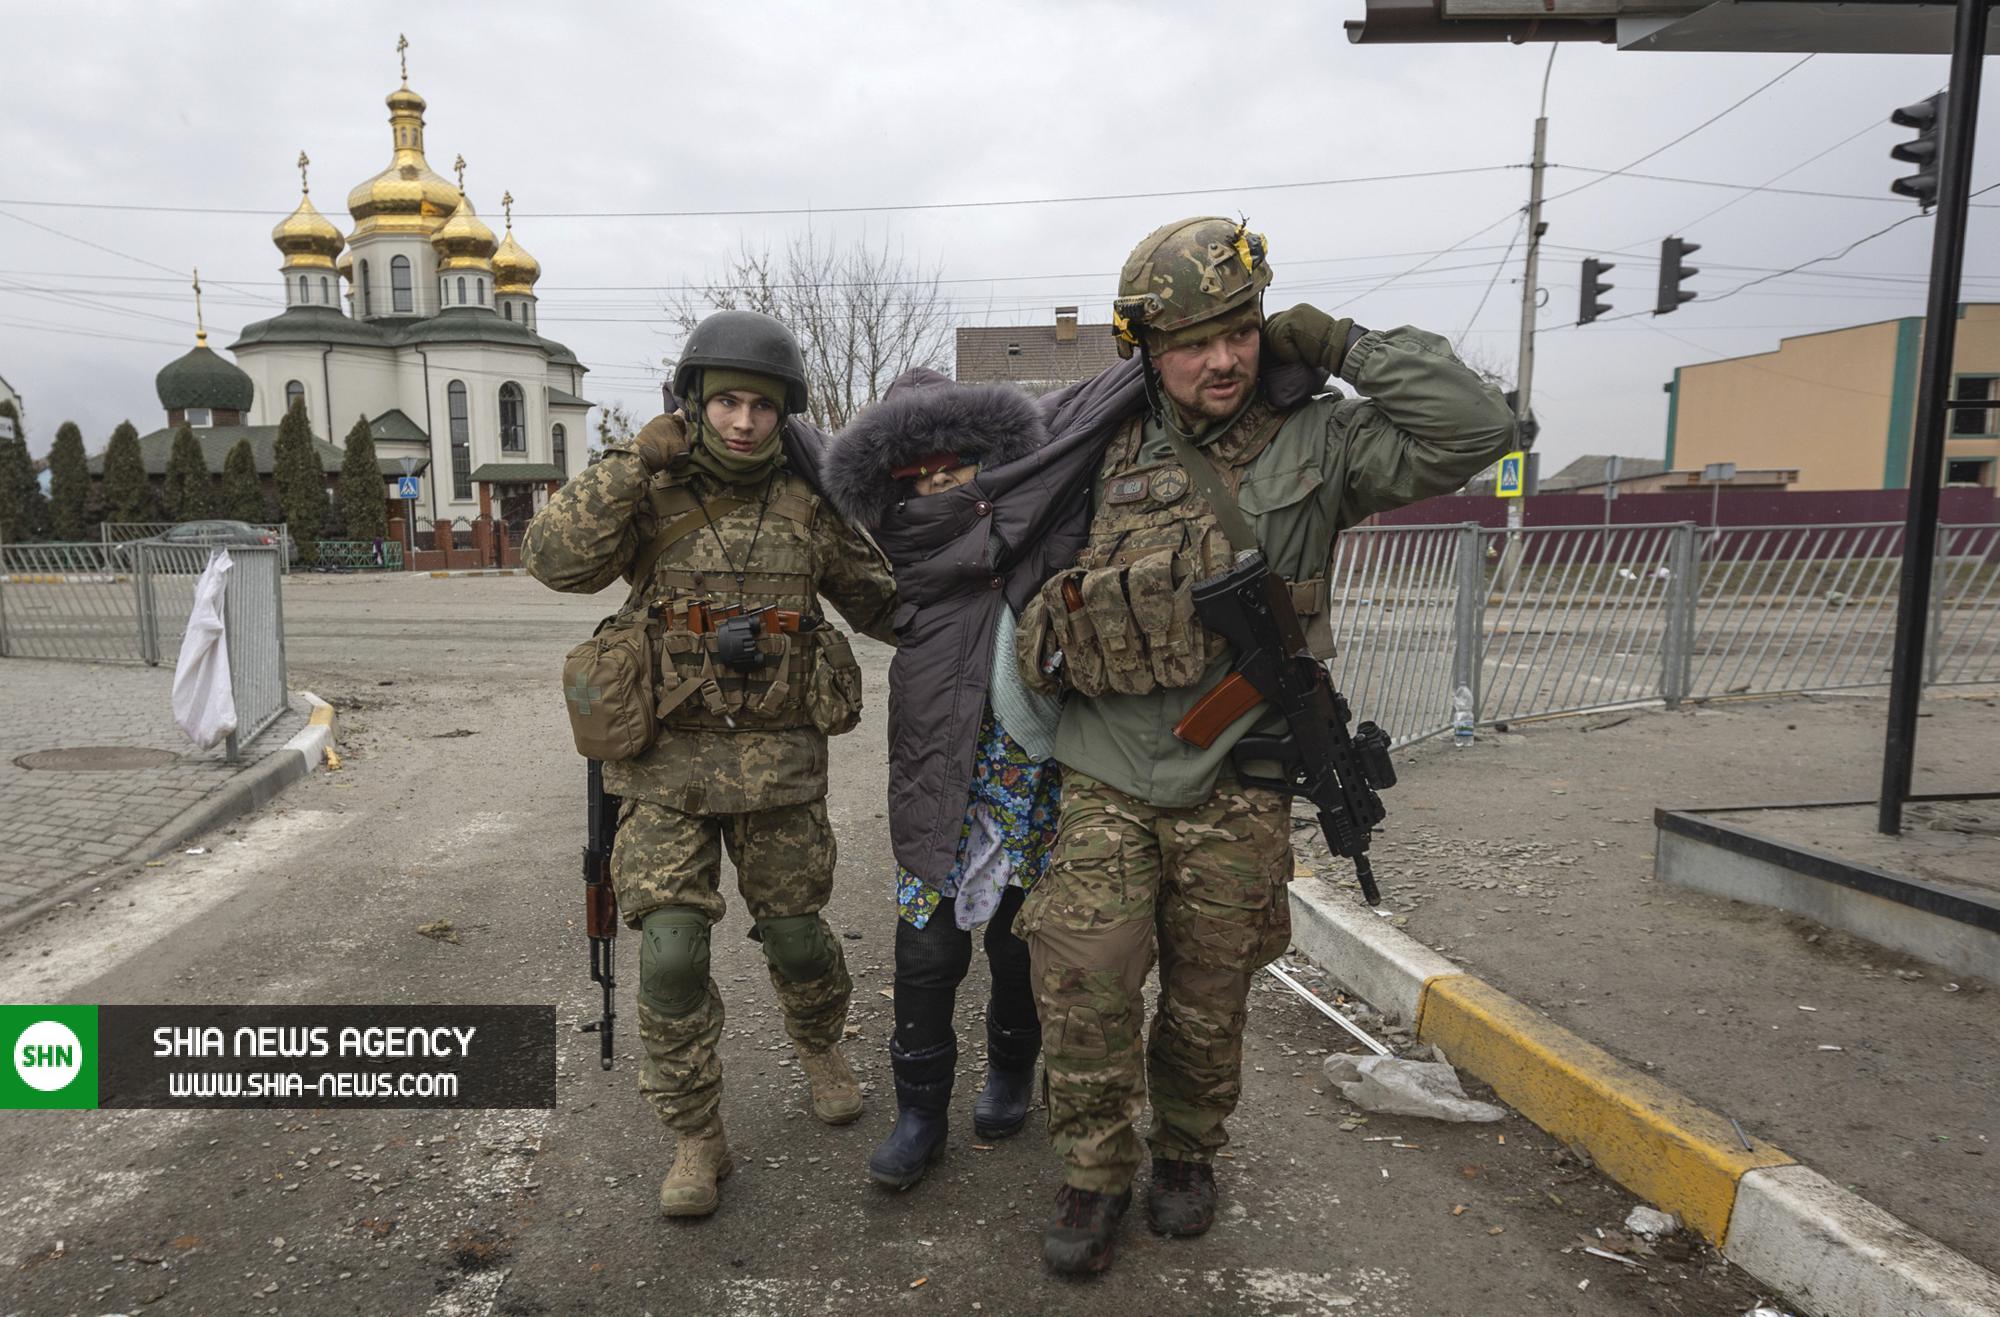 تصاویر آسوشیتدپرس از جنگ اوکراین